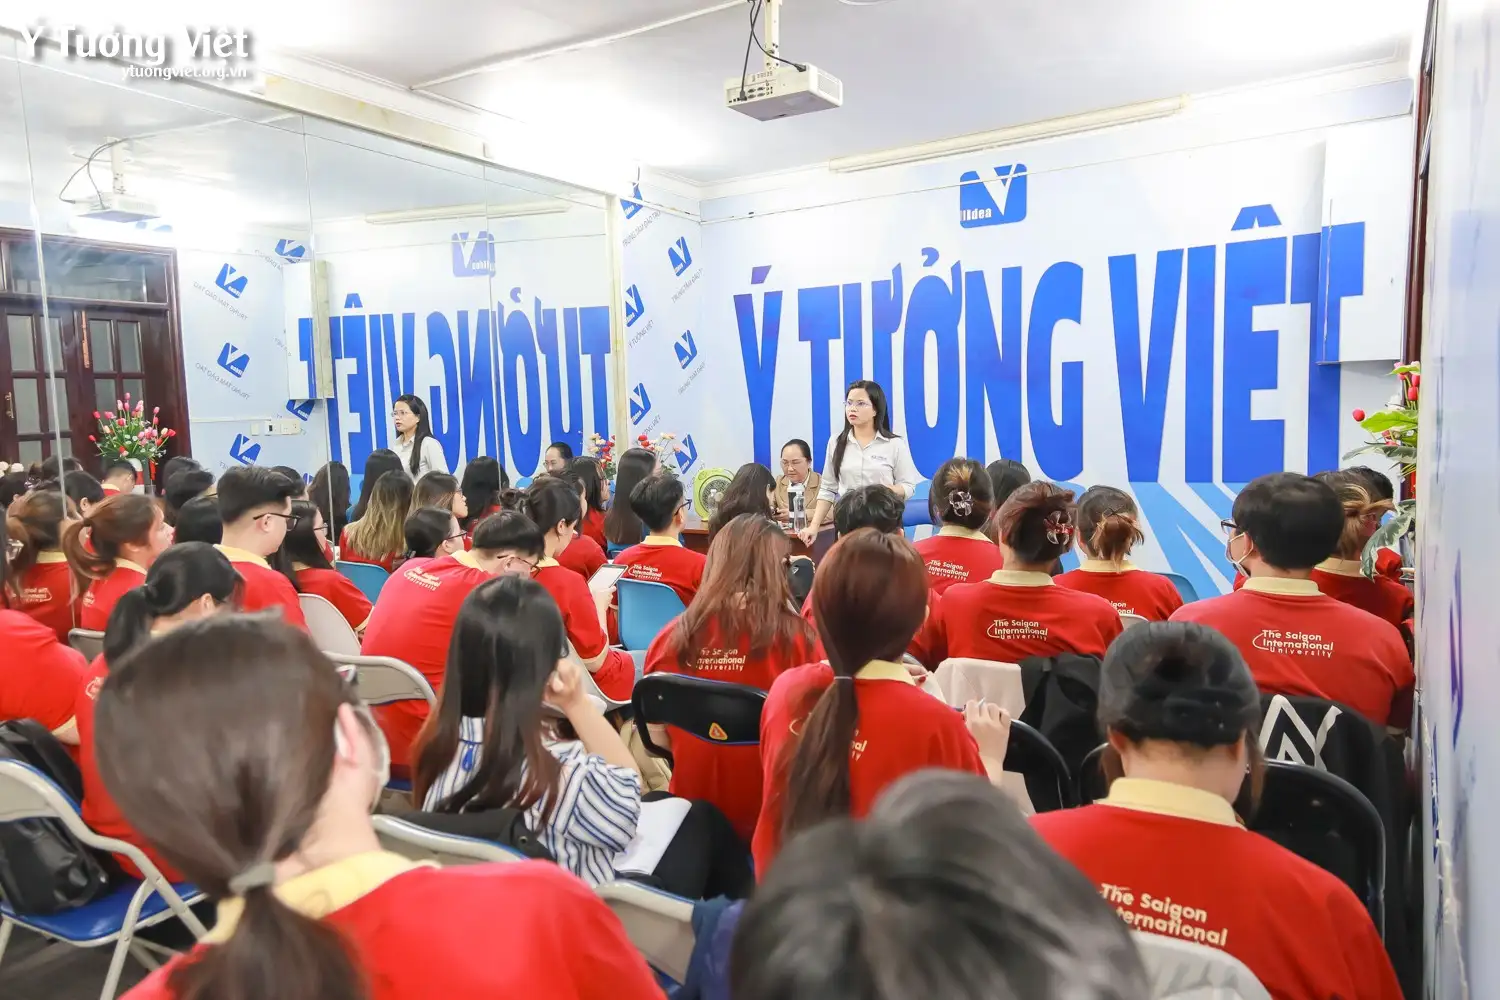 Đón đoàn sinh viên Đại học Quốc tế Sài Gòn đến tham quan và trải nghiệm thực tế nghề nghiệp